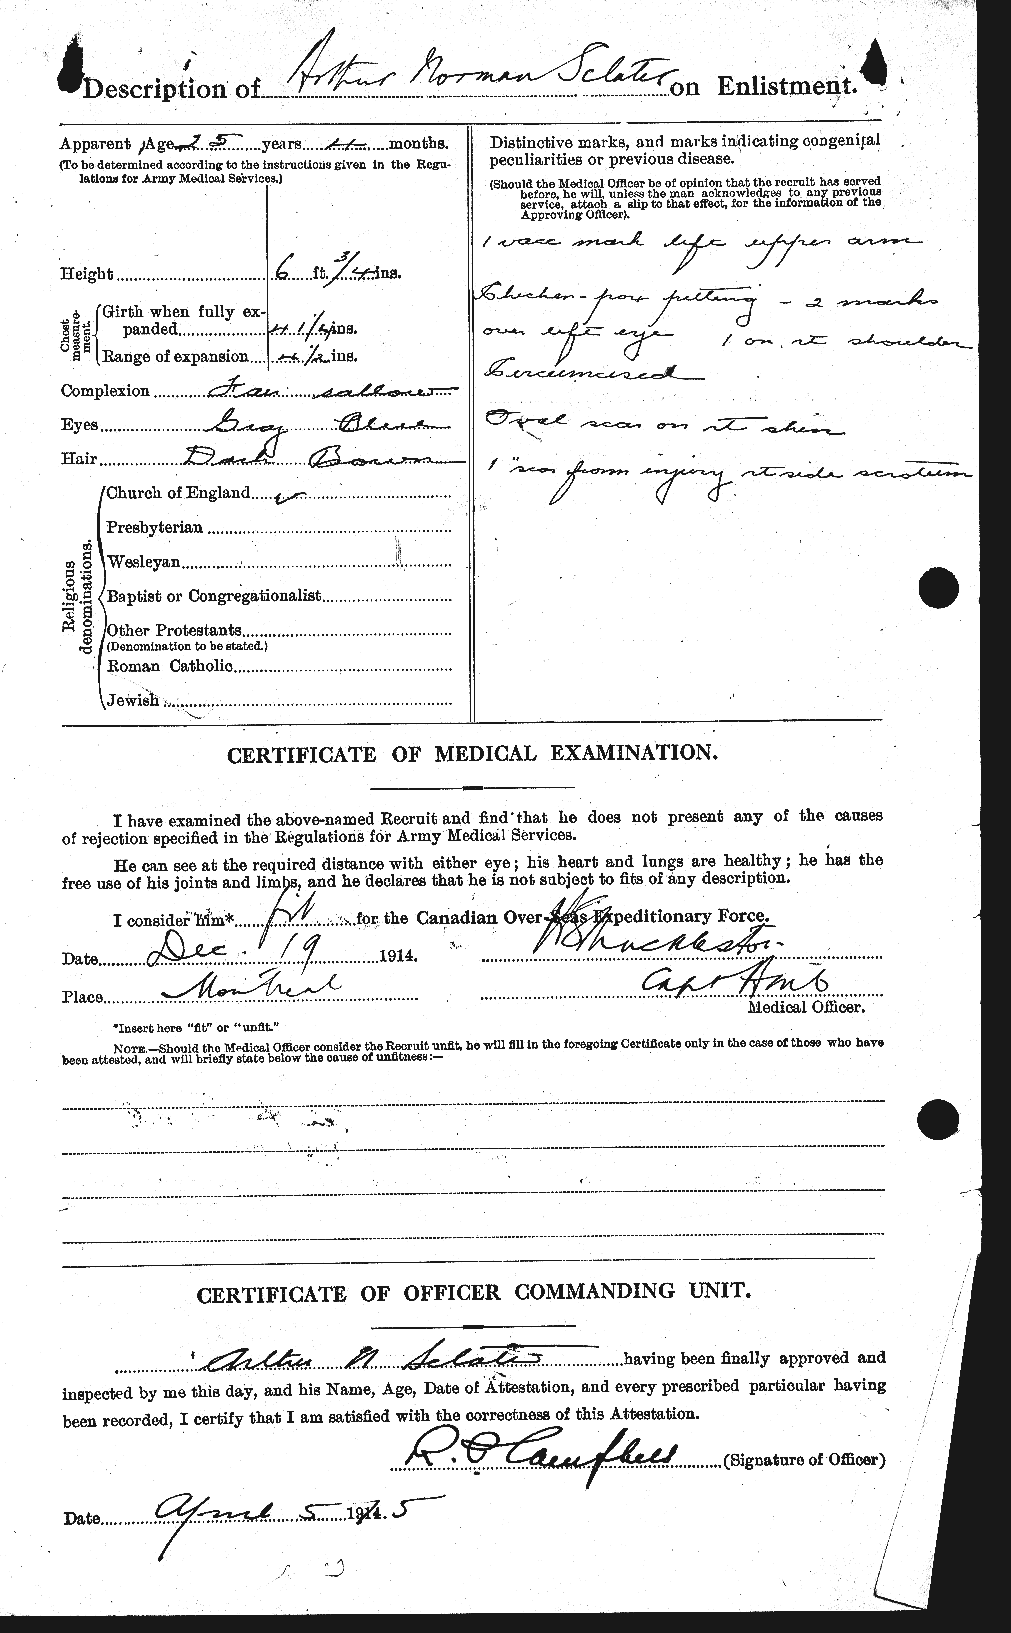 Dossiers du Personnel de la Première Guerre mondiale - CEC 080147b